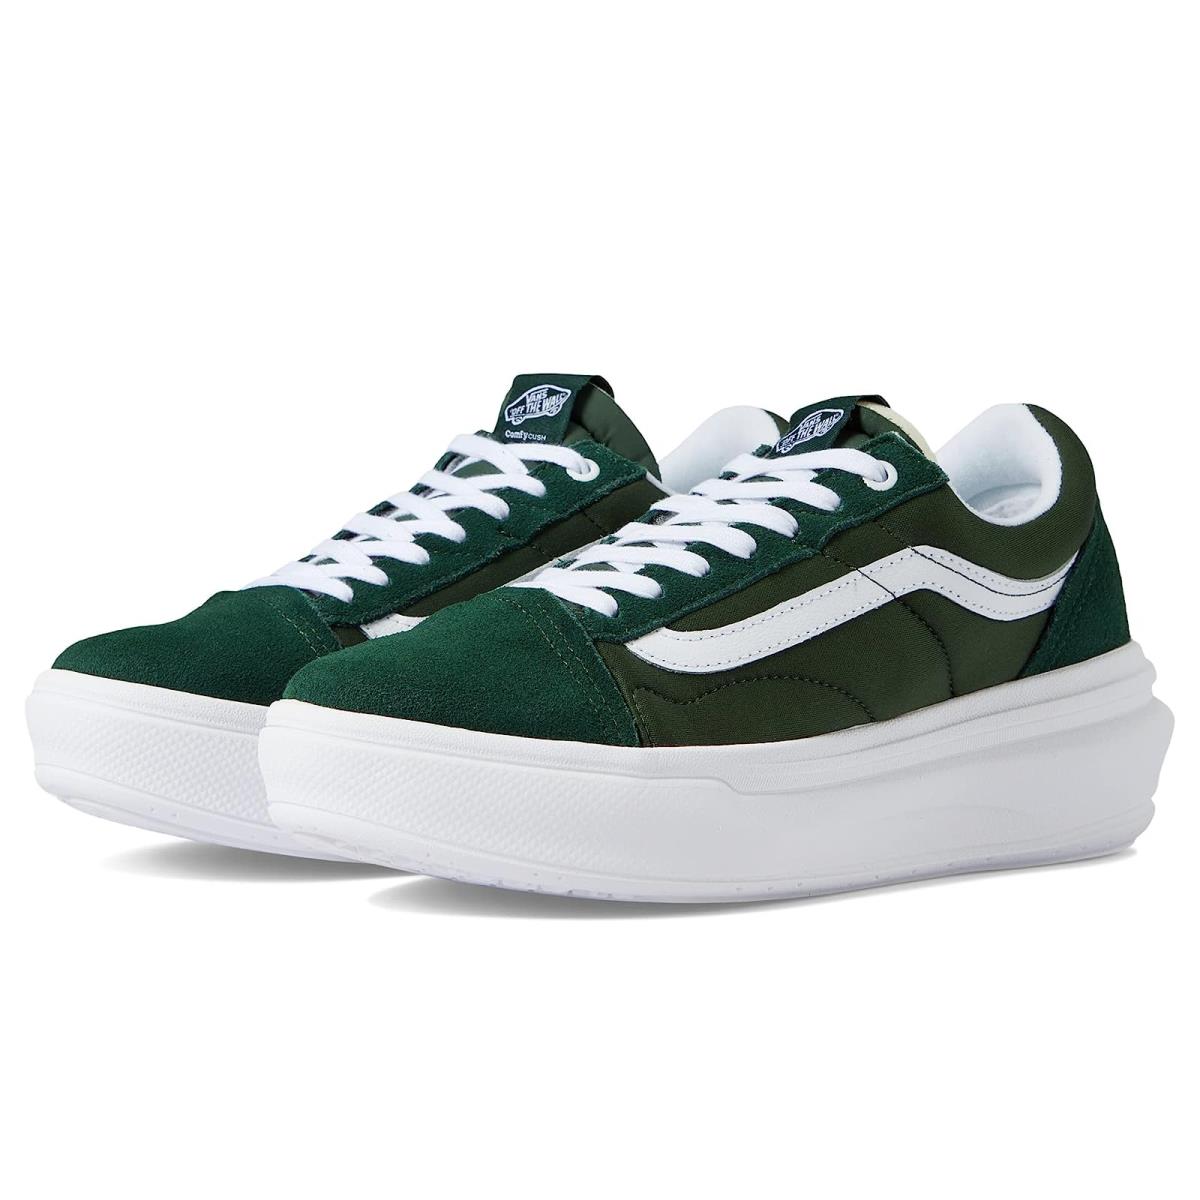 Unisex Sneakers Athletic Shoes Vans Old Skool Overt CC Dark Green/White